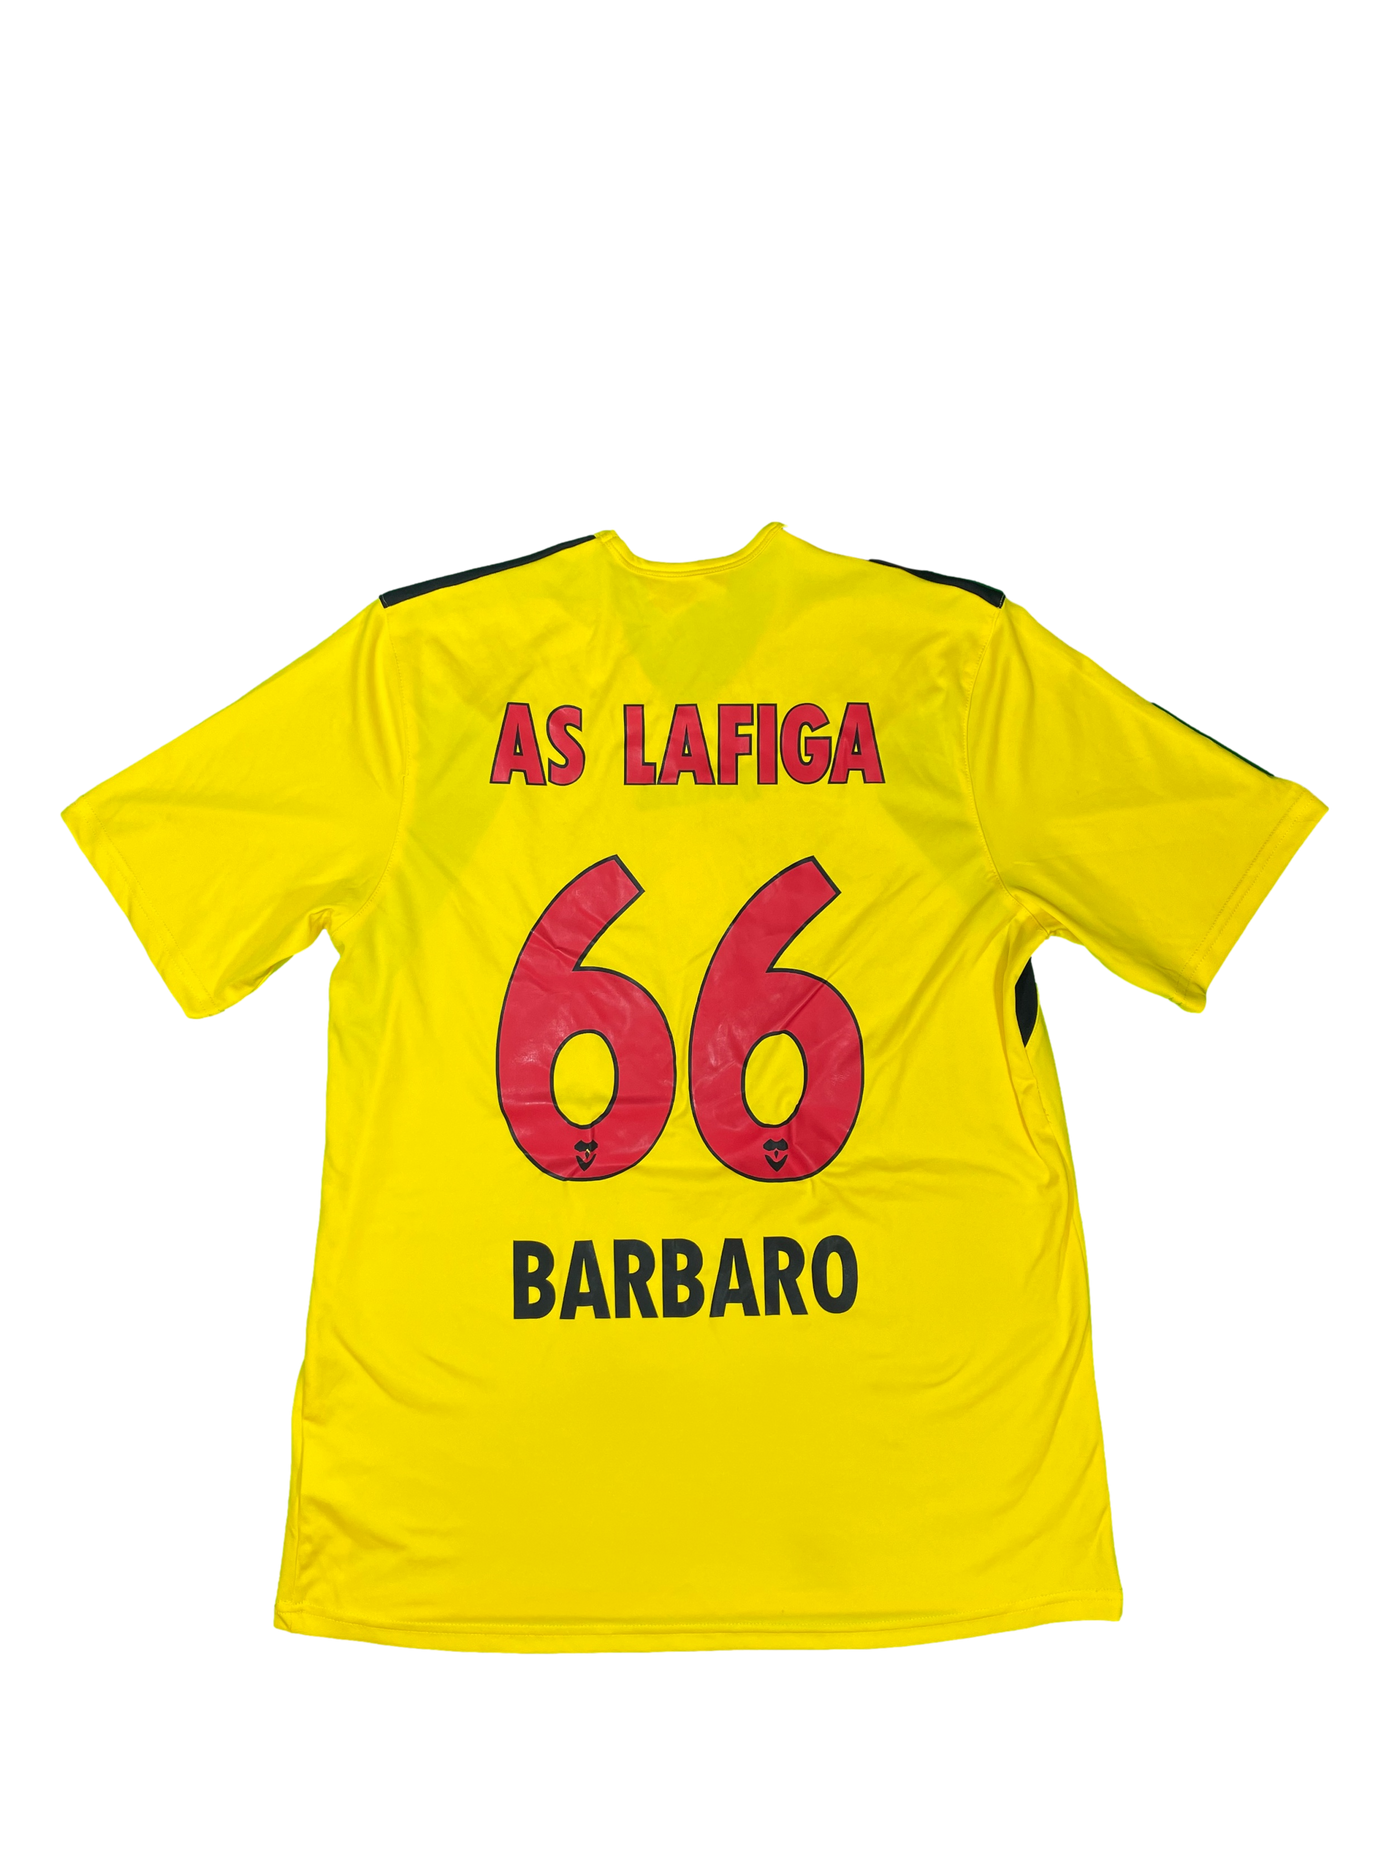 Maillot football AS Lafiga Basilea #66 Barbaro - Joma